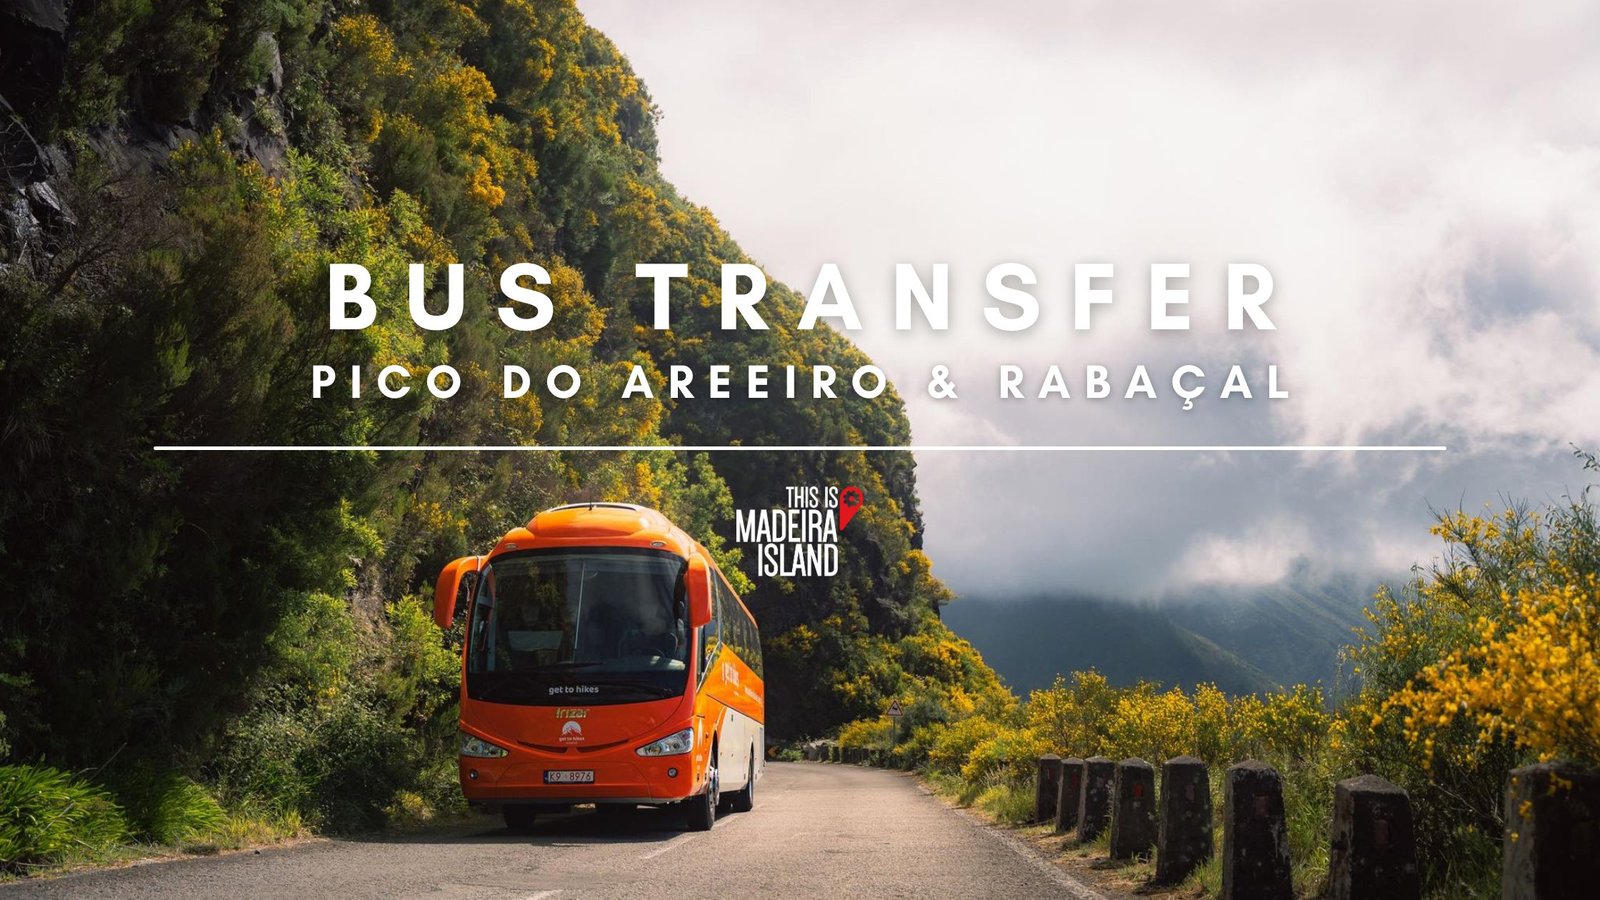 Bus Transfer: Pico do Areeiro and Rabaçal